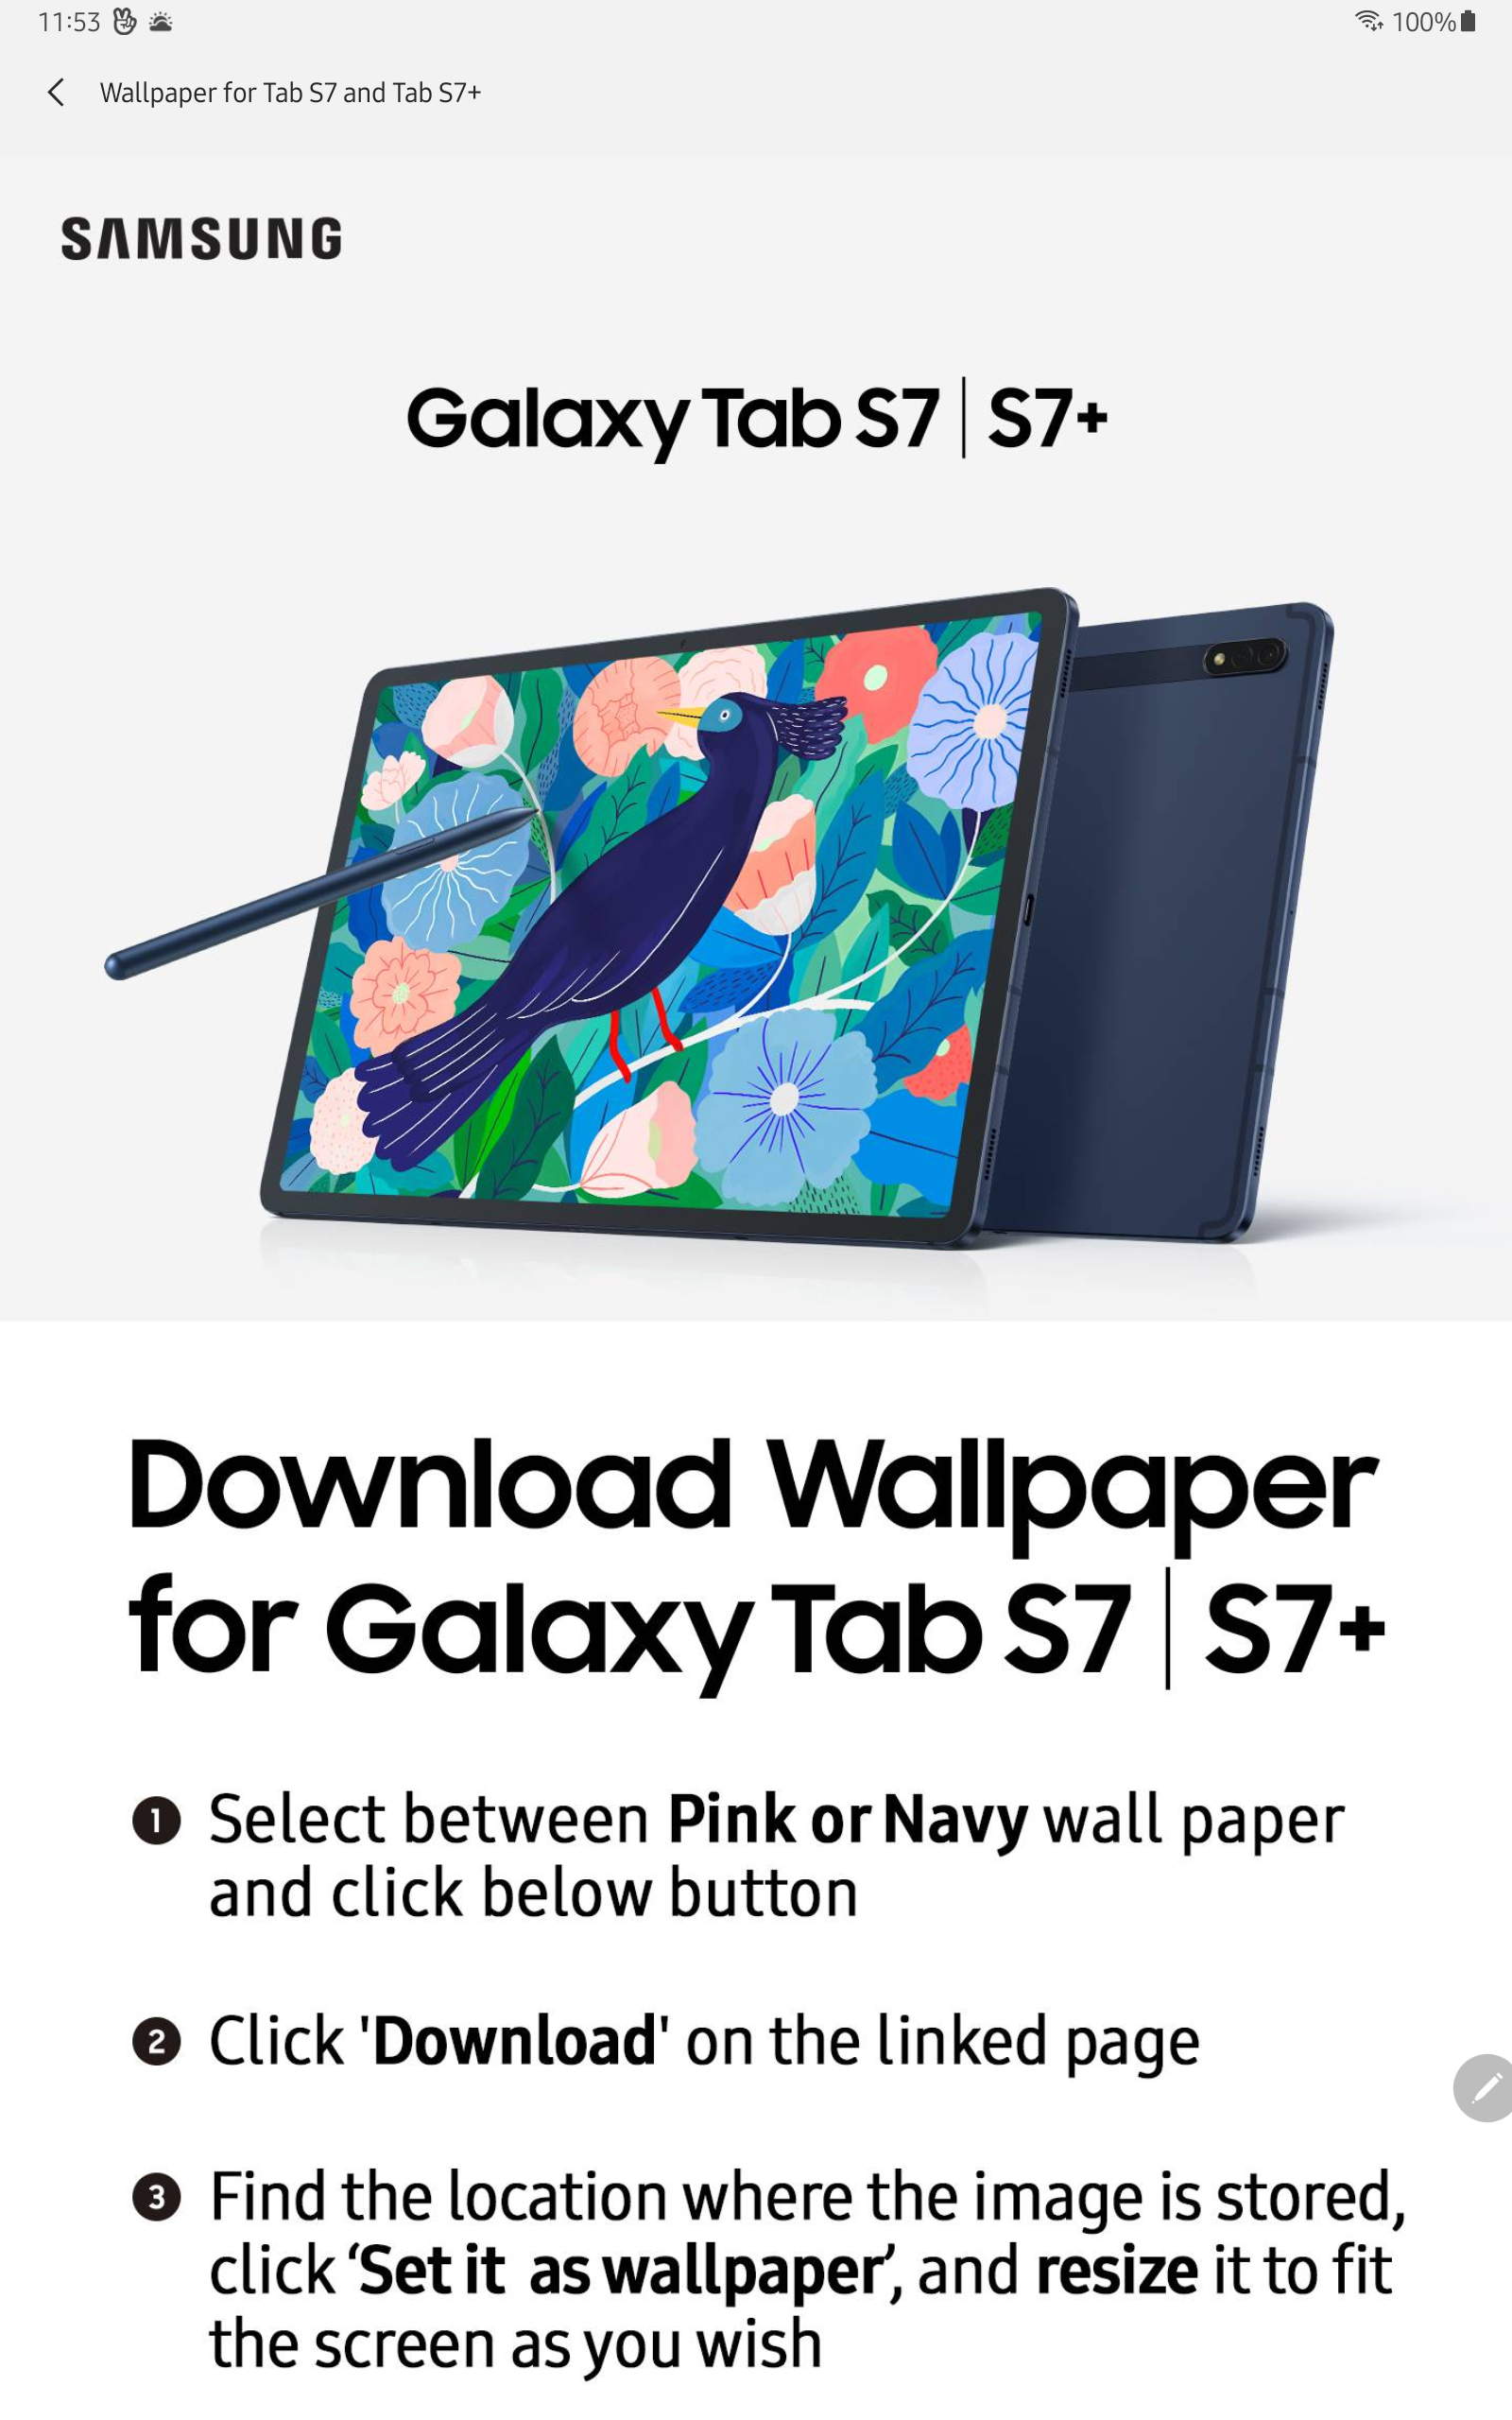 Trang trí cho chiếc Galaxy Tab A7 của bạn với những mẫu hình nền hoàn hảo. Chúng tôi mang đến cho bạn những bức ảnh nền tuyệt đẹp và đa dạng để mang đến sự mới lạ cho thiết bị của bạn.